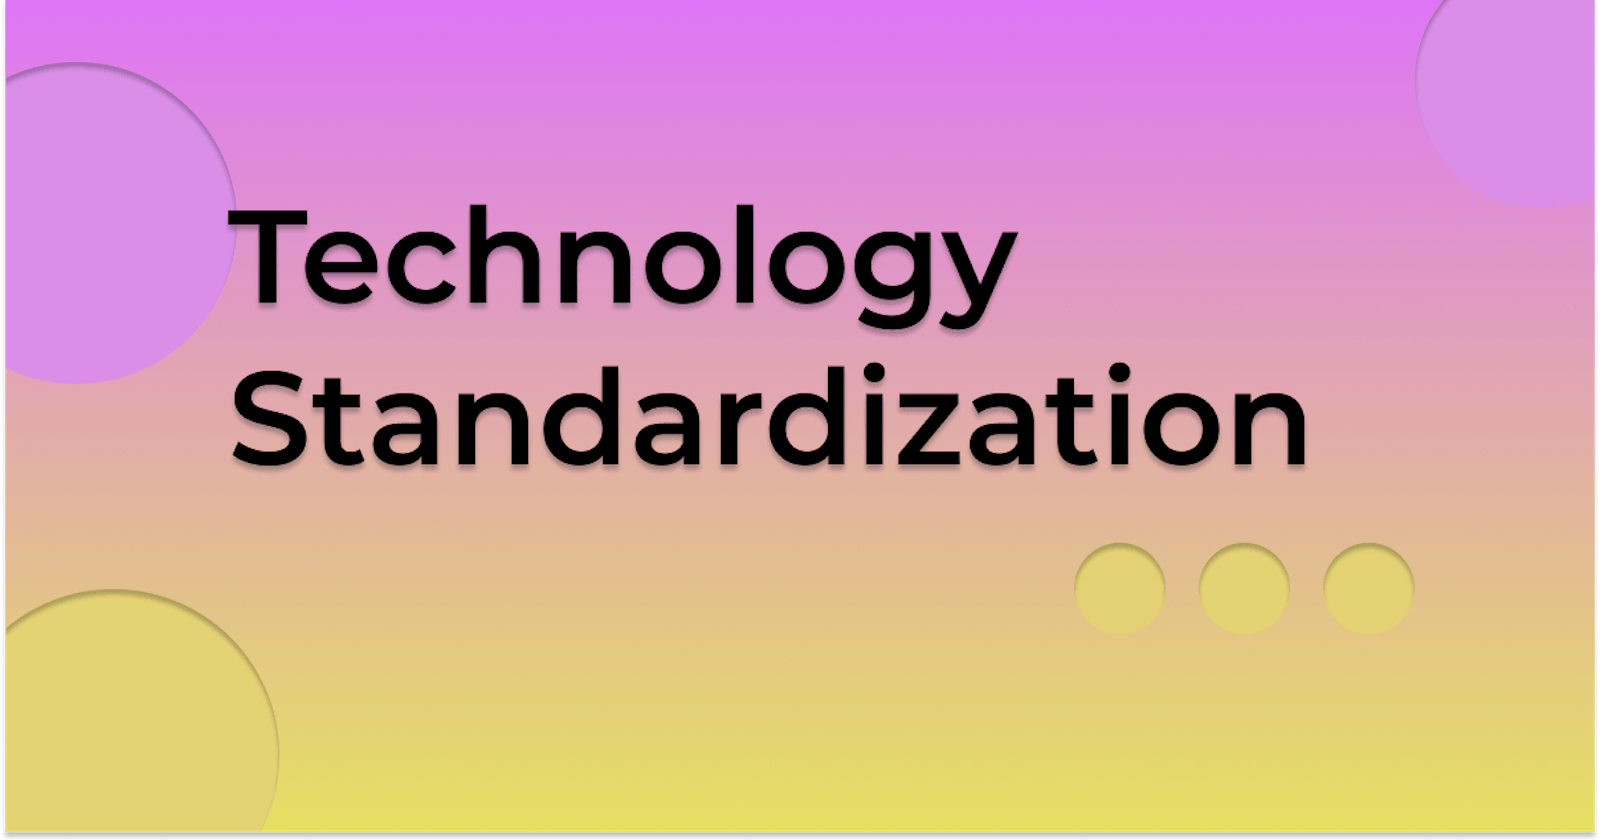 Technology Standardization and Web Standards